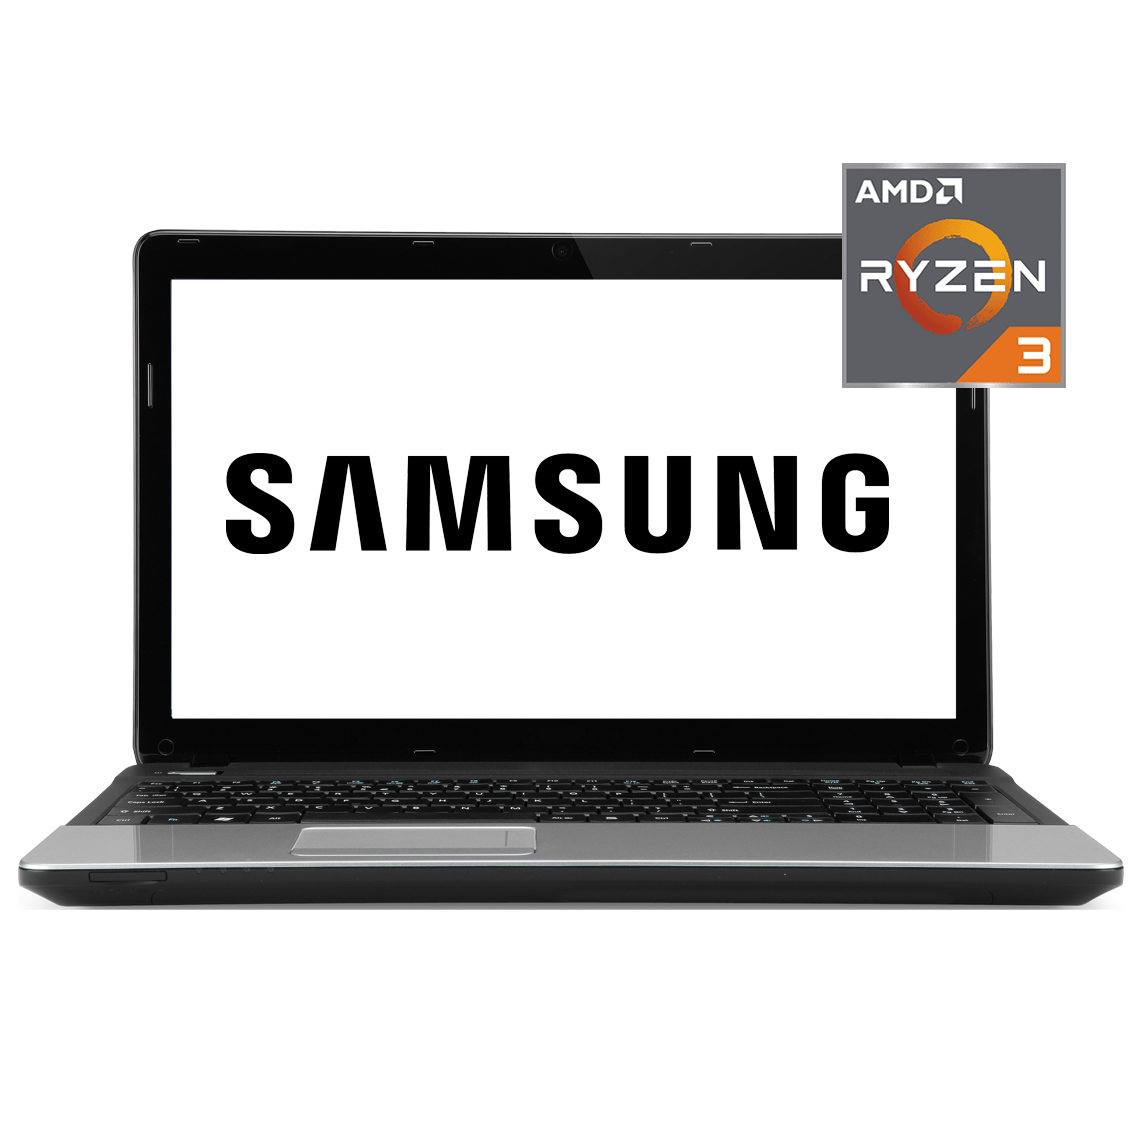 Samsung - 17.3 inch AMD Ryzen 3